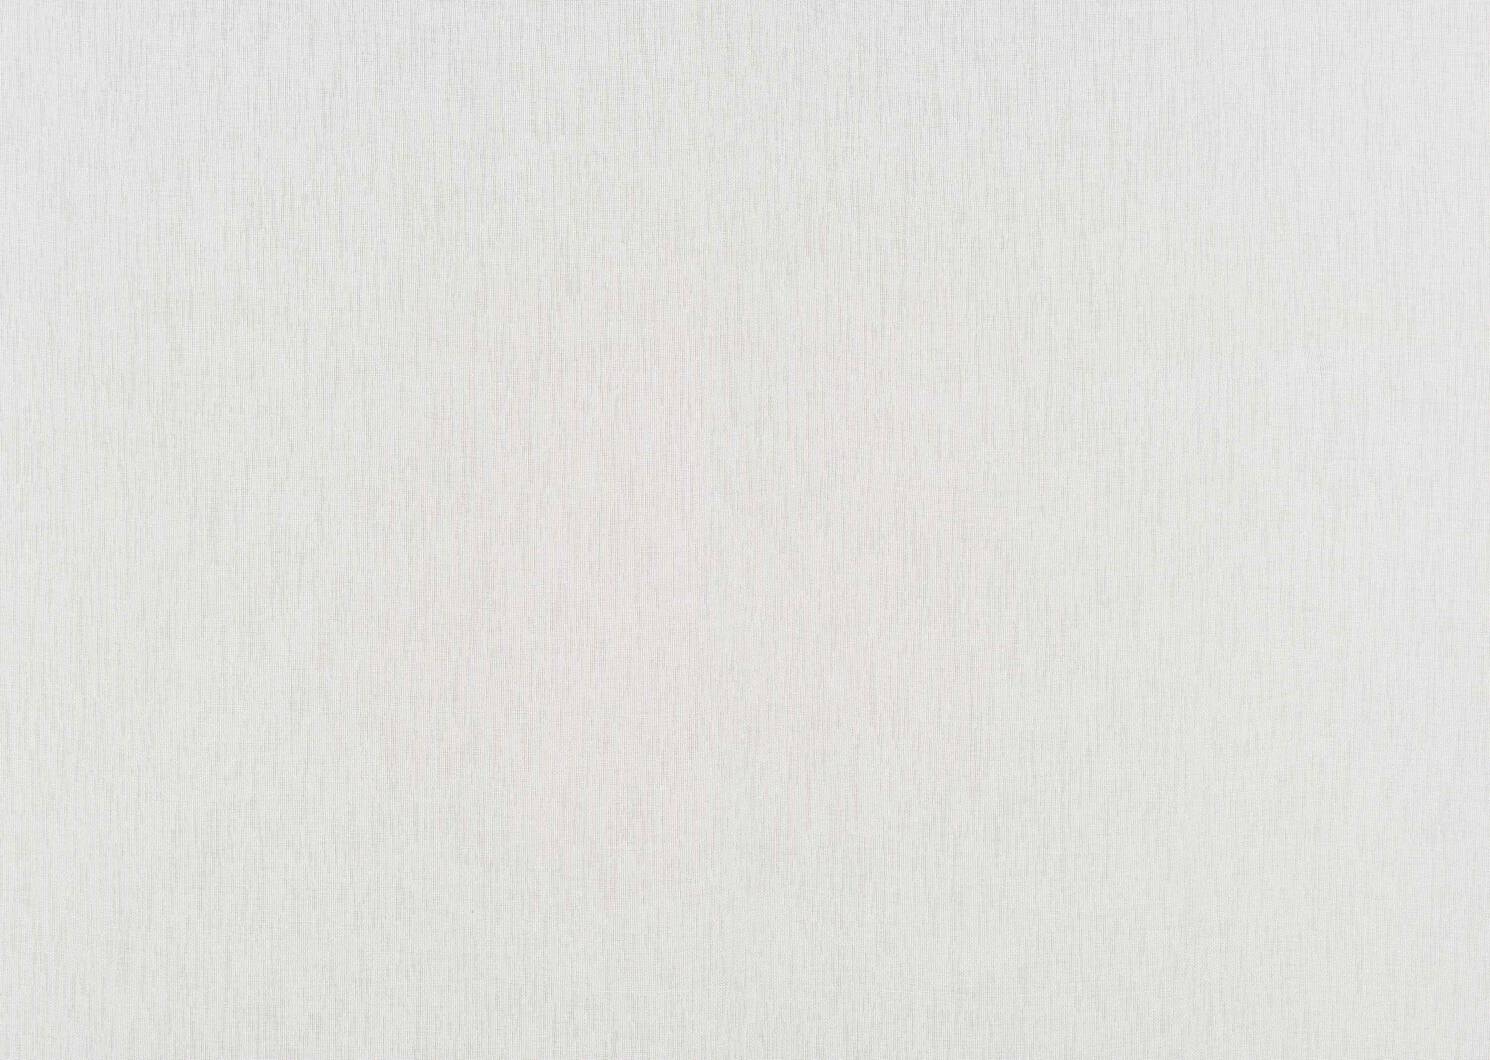 Misumi Sheer Panels White